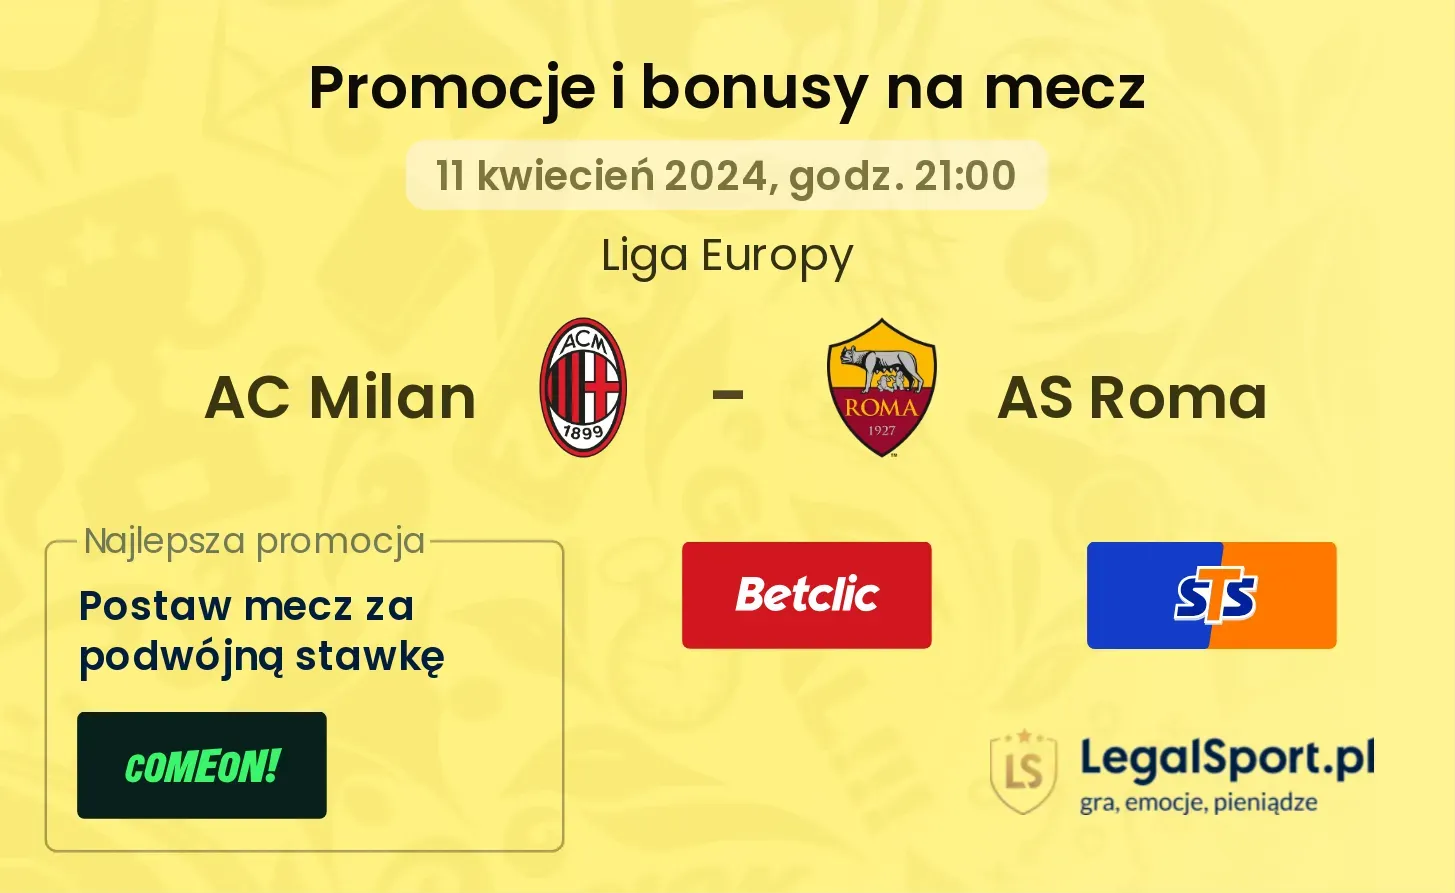 AC Milan - AS Roma promocje bonusy na mecz